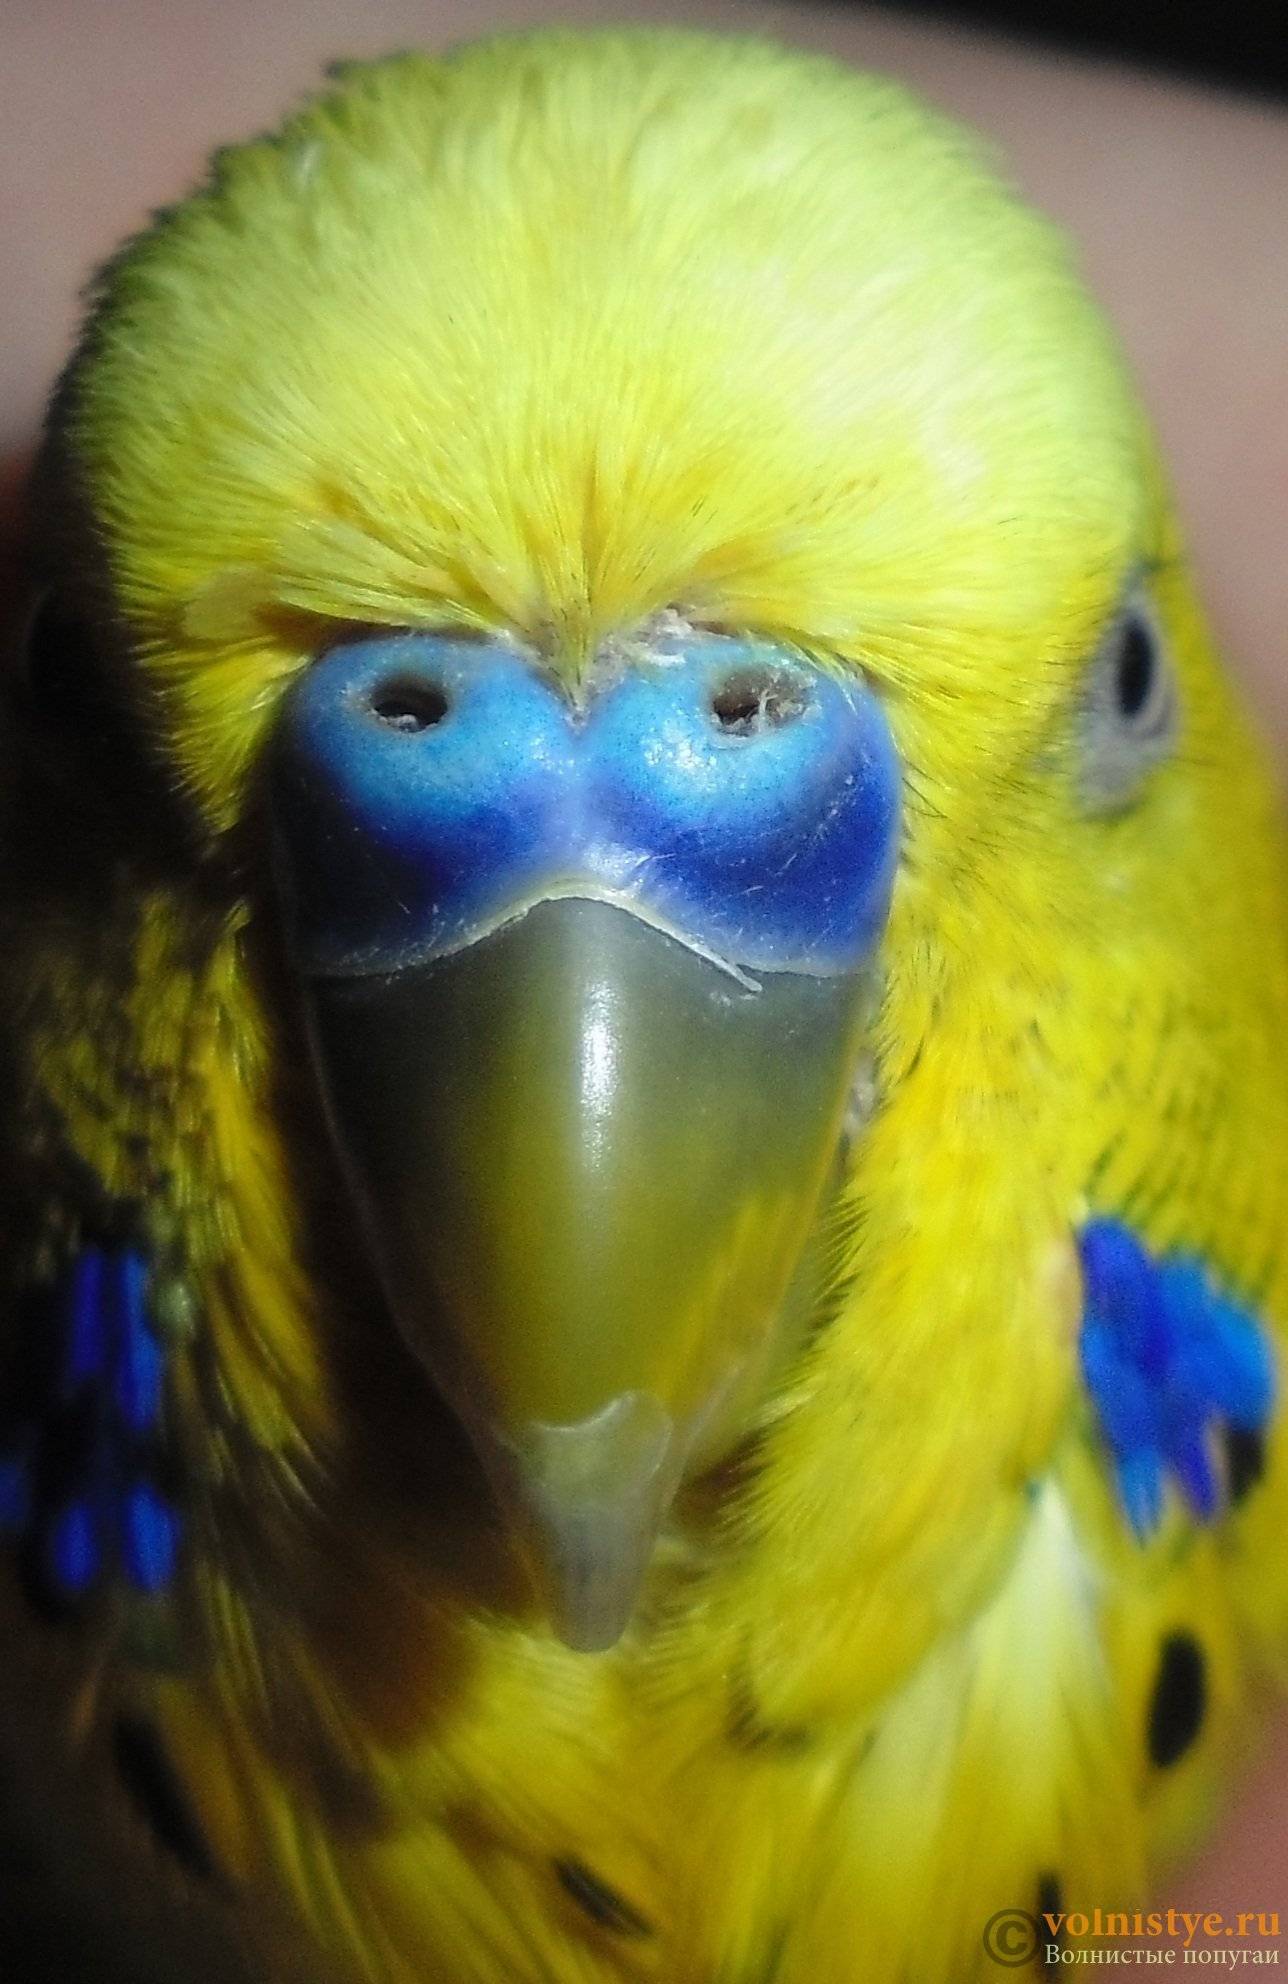 Волнистый попугай чихает: простуда или проблемы с легкими?